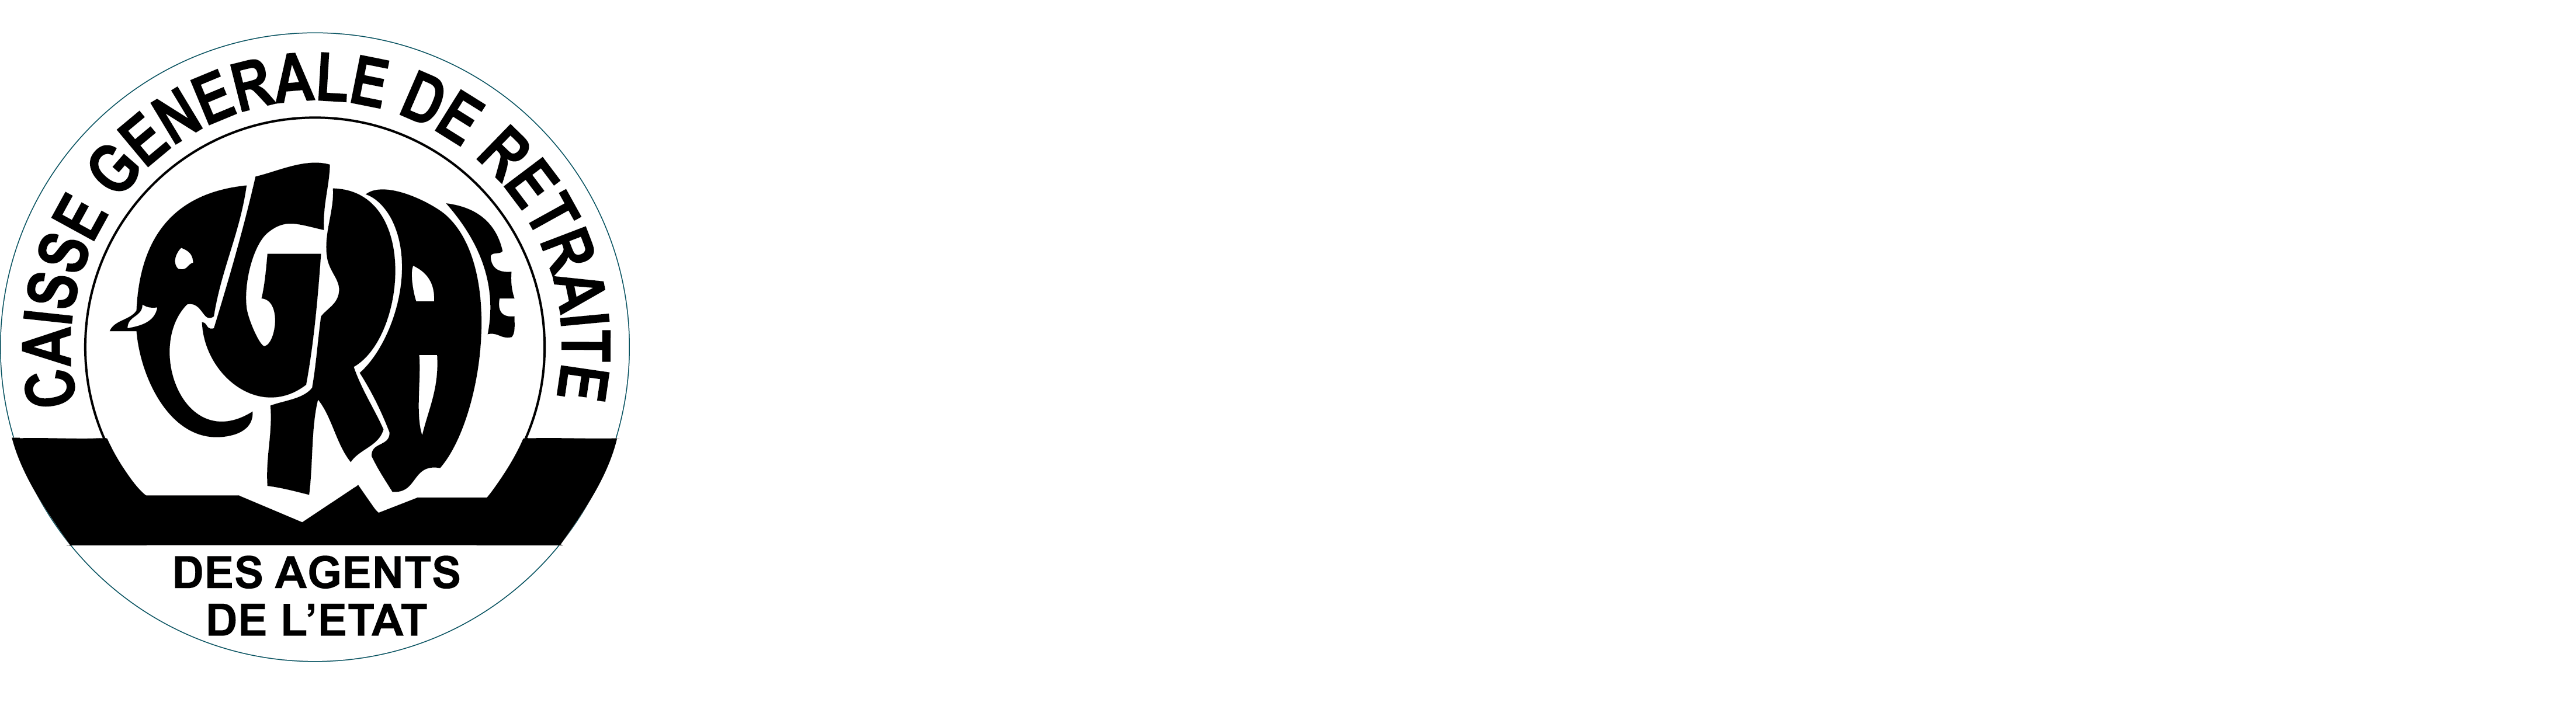 Logo CGRAE